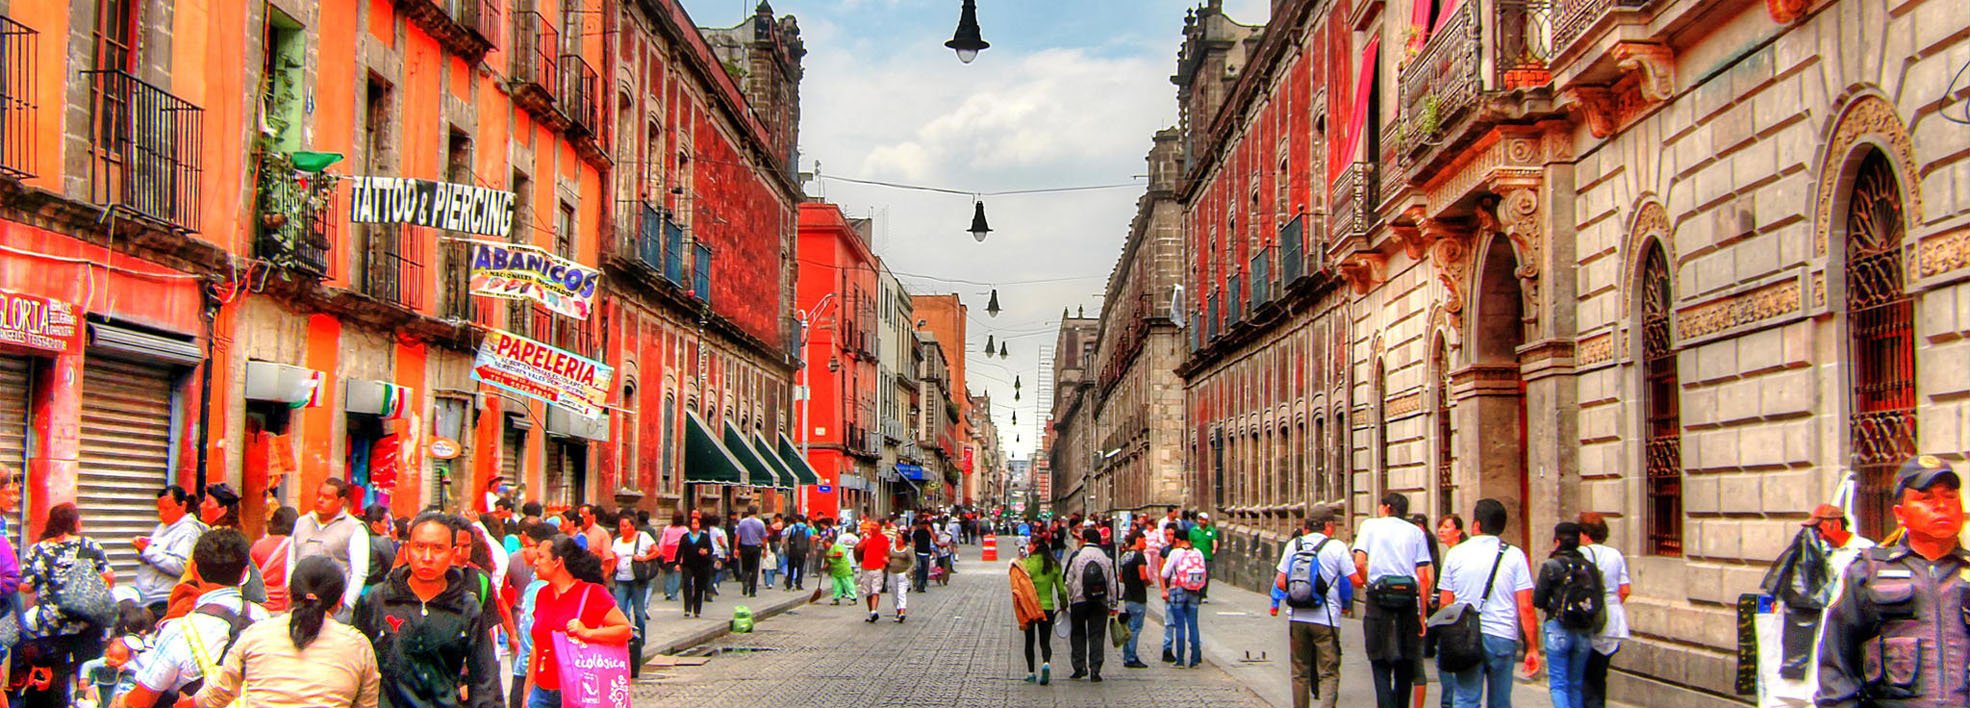 Город найка. Мехико Сити улицы. Город Найка Мексика. Красивые места в Мехико Сити.